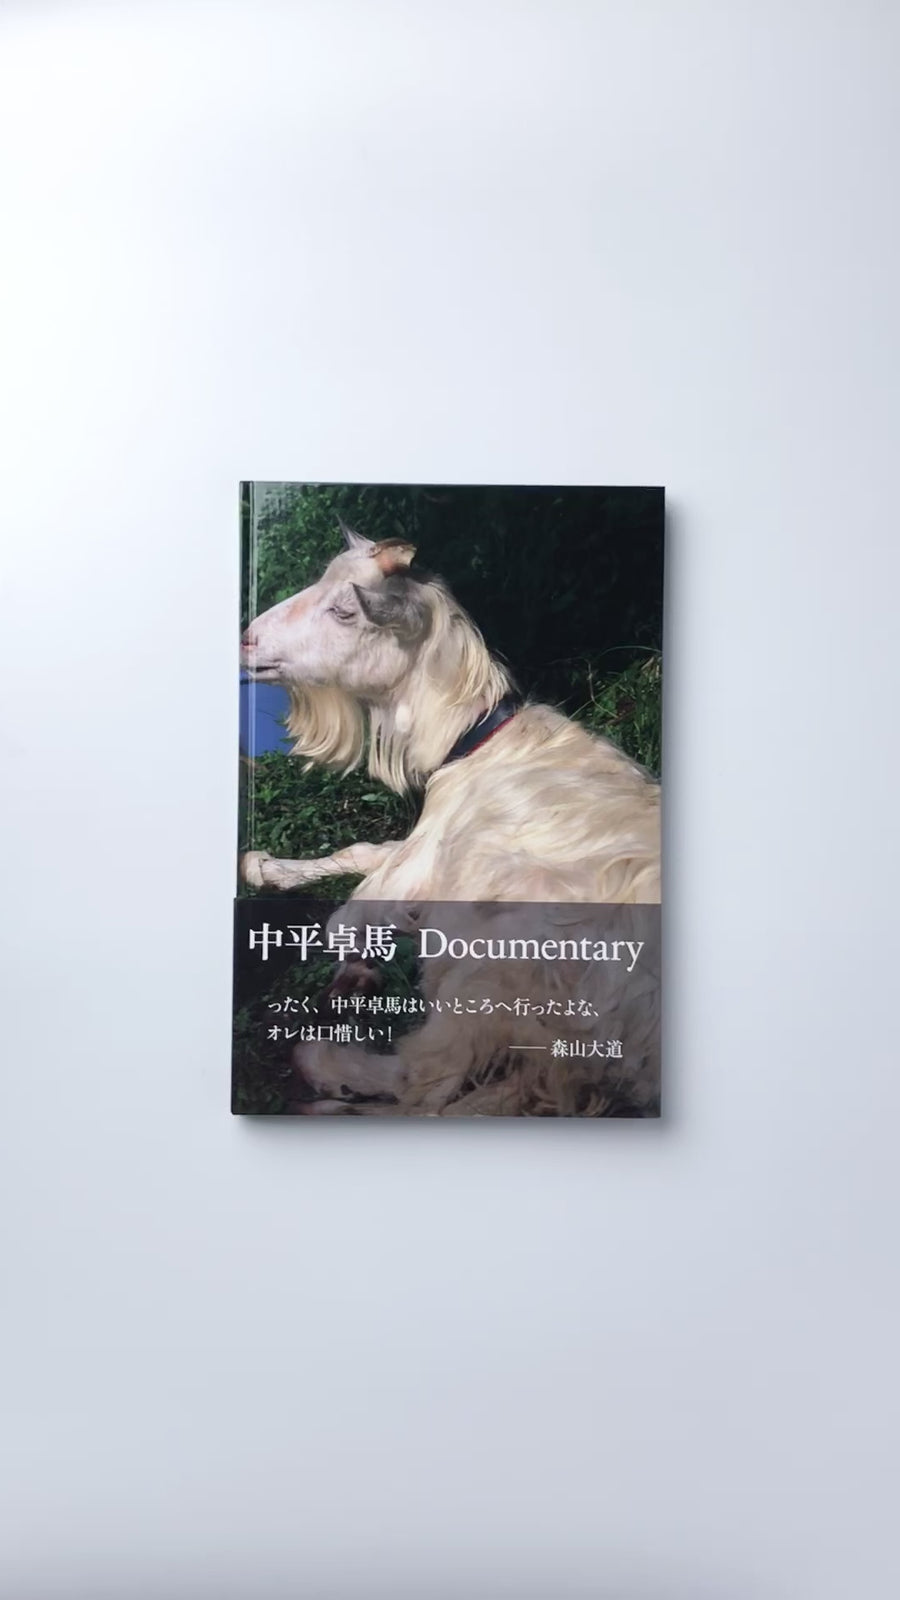 Documentary by 中平卓馬